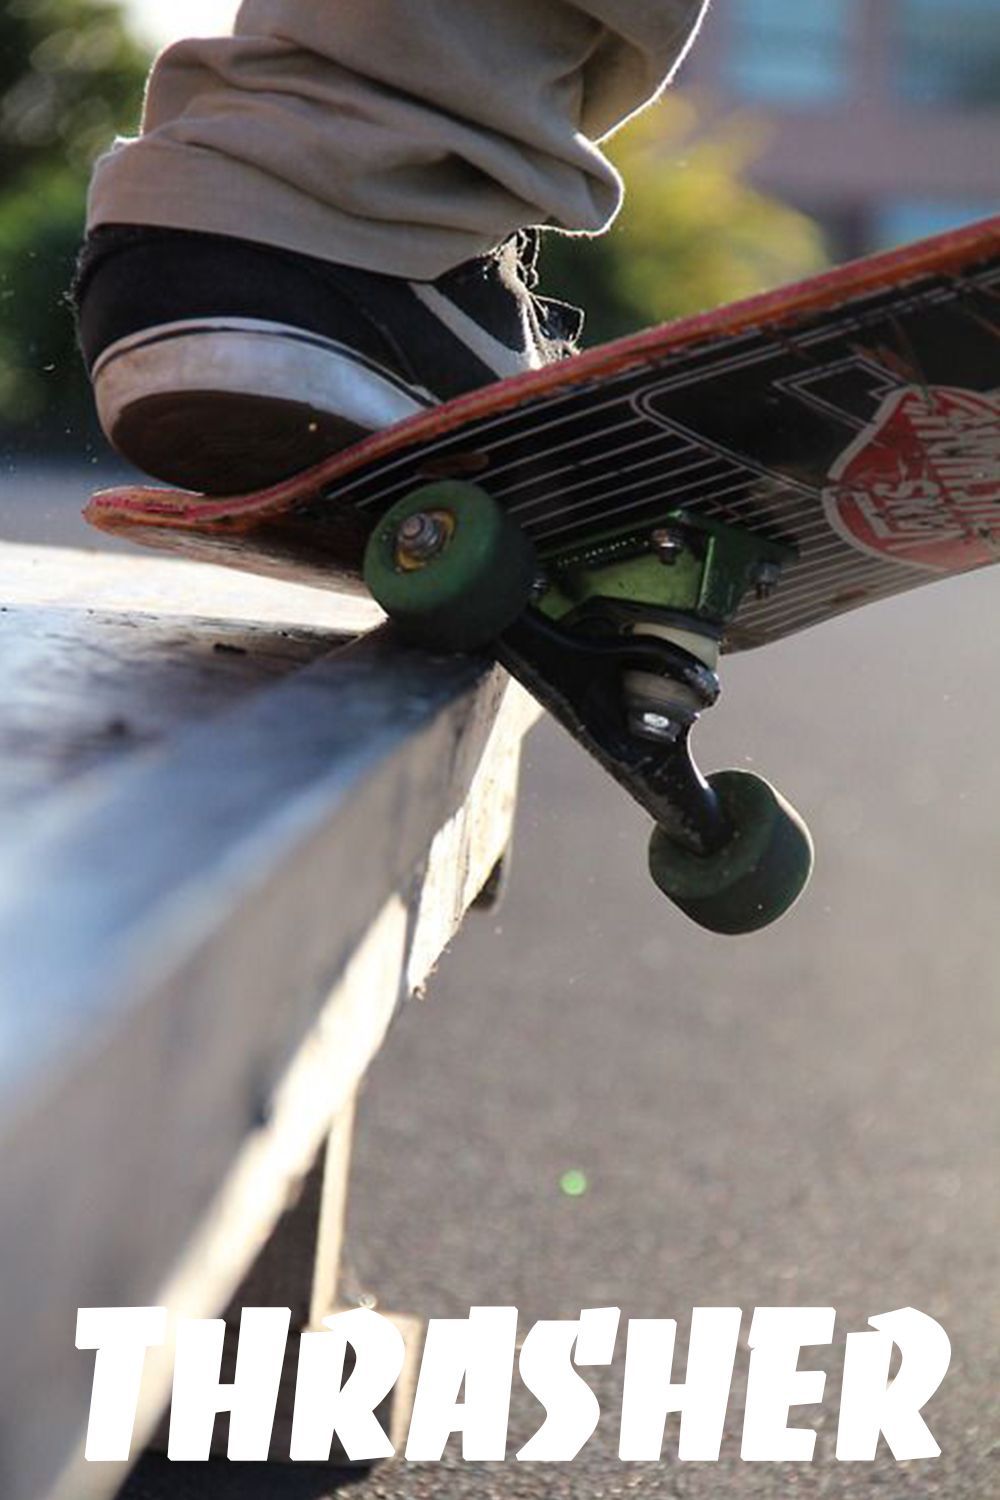 Skateboard Thrasher Aesthetic Wallpaper